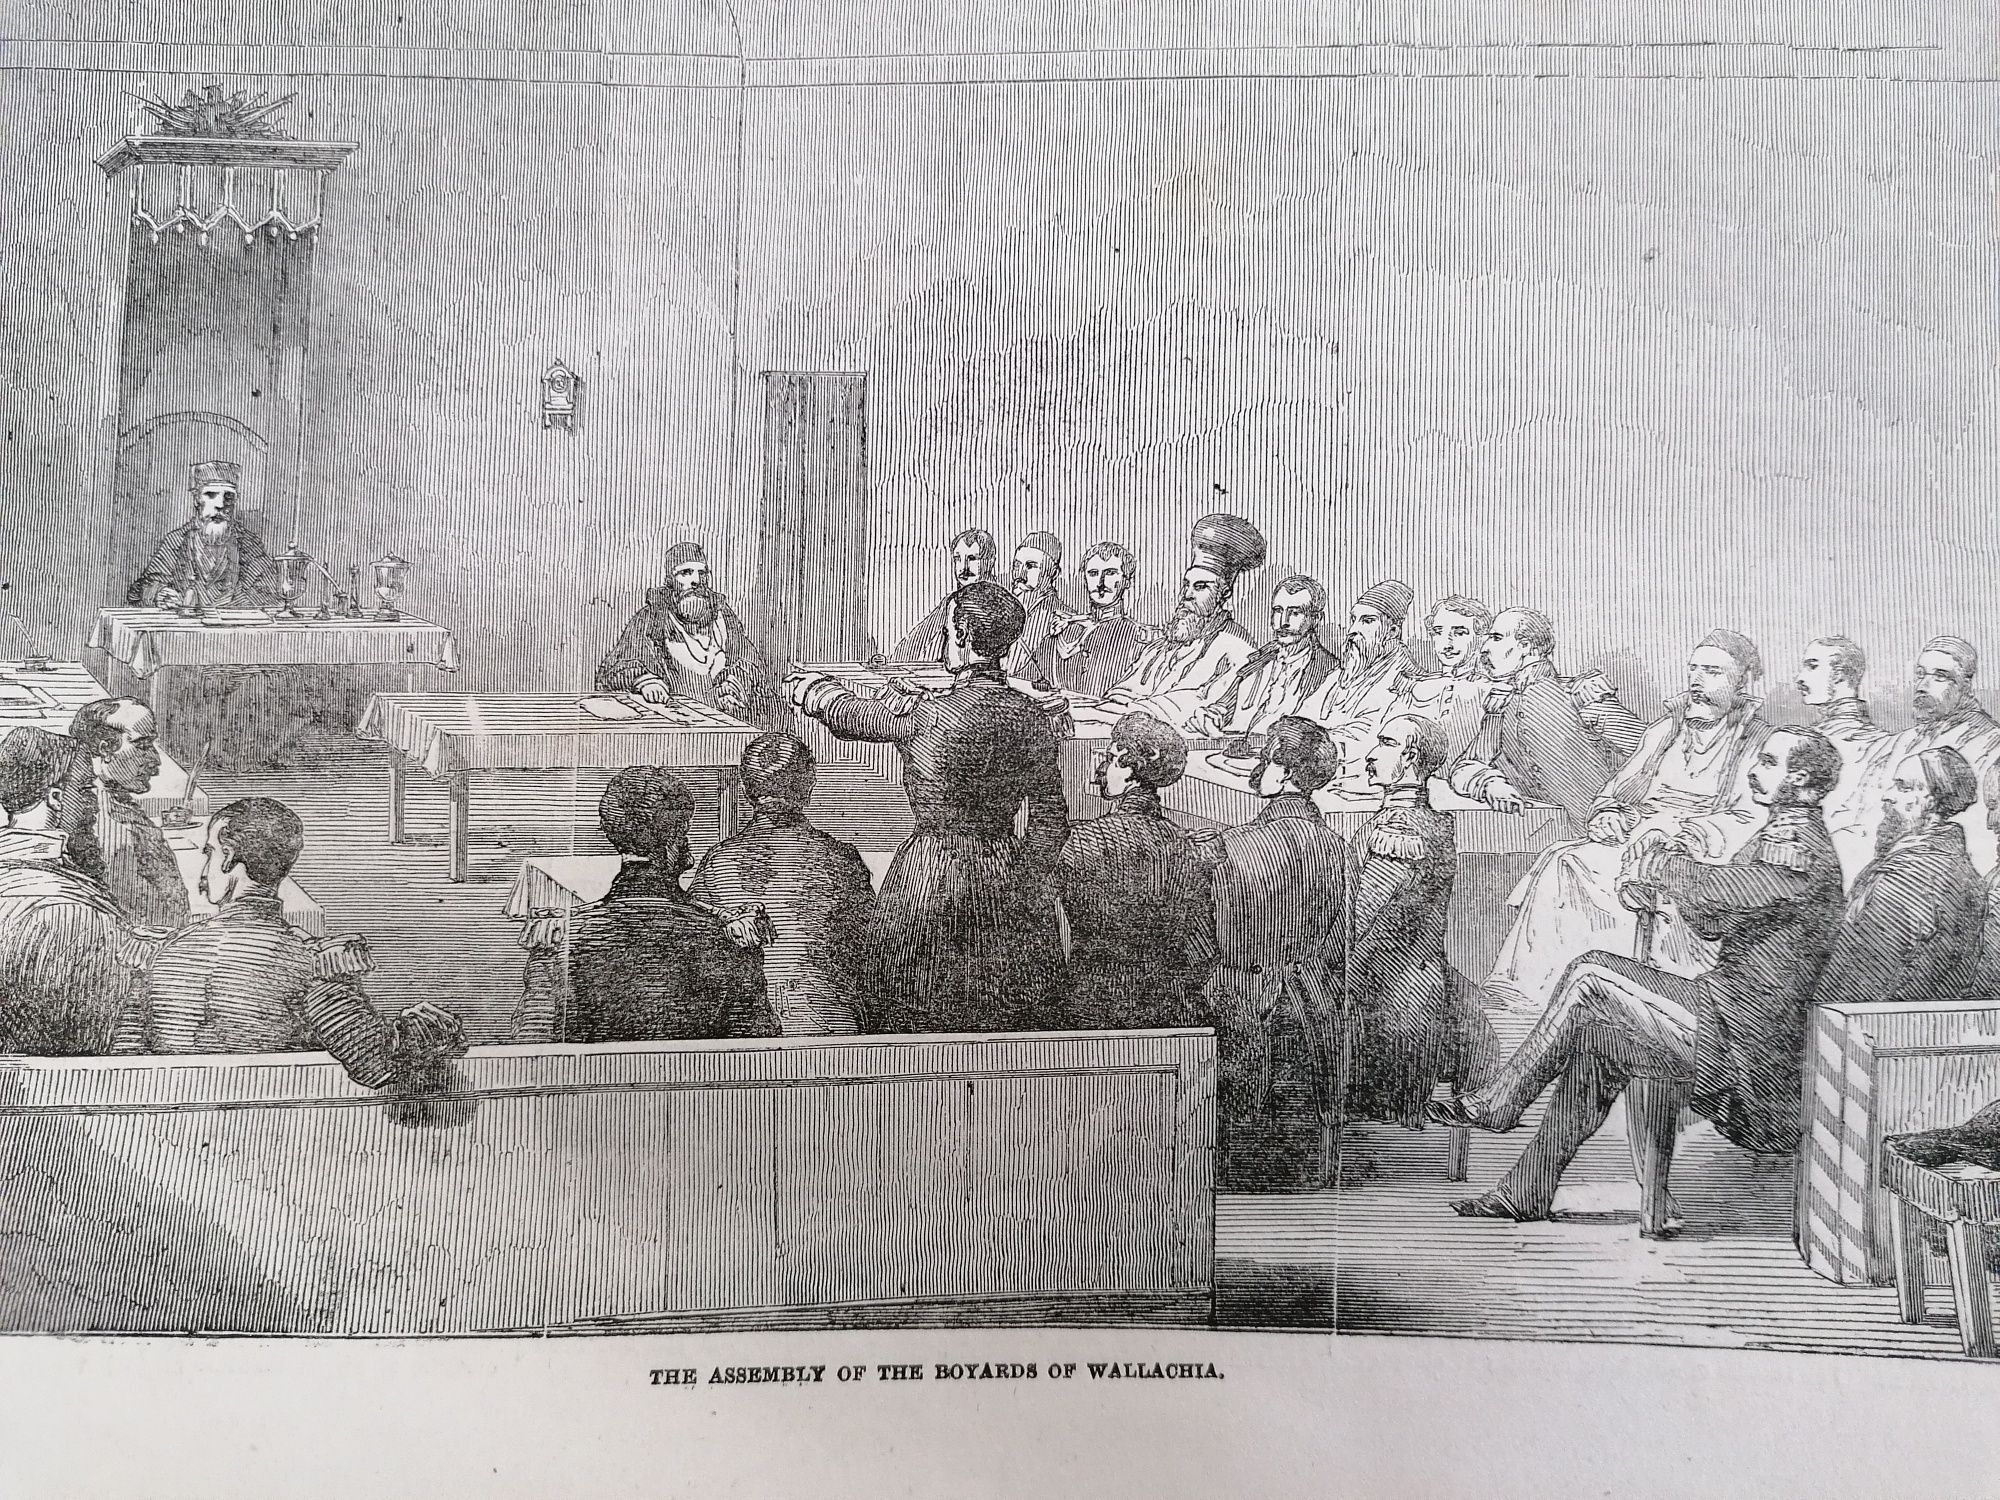 Ziar  1853 Galati London News original articole si litografie